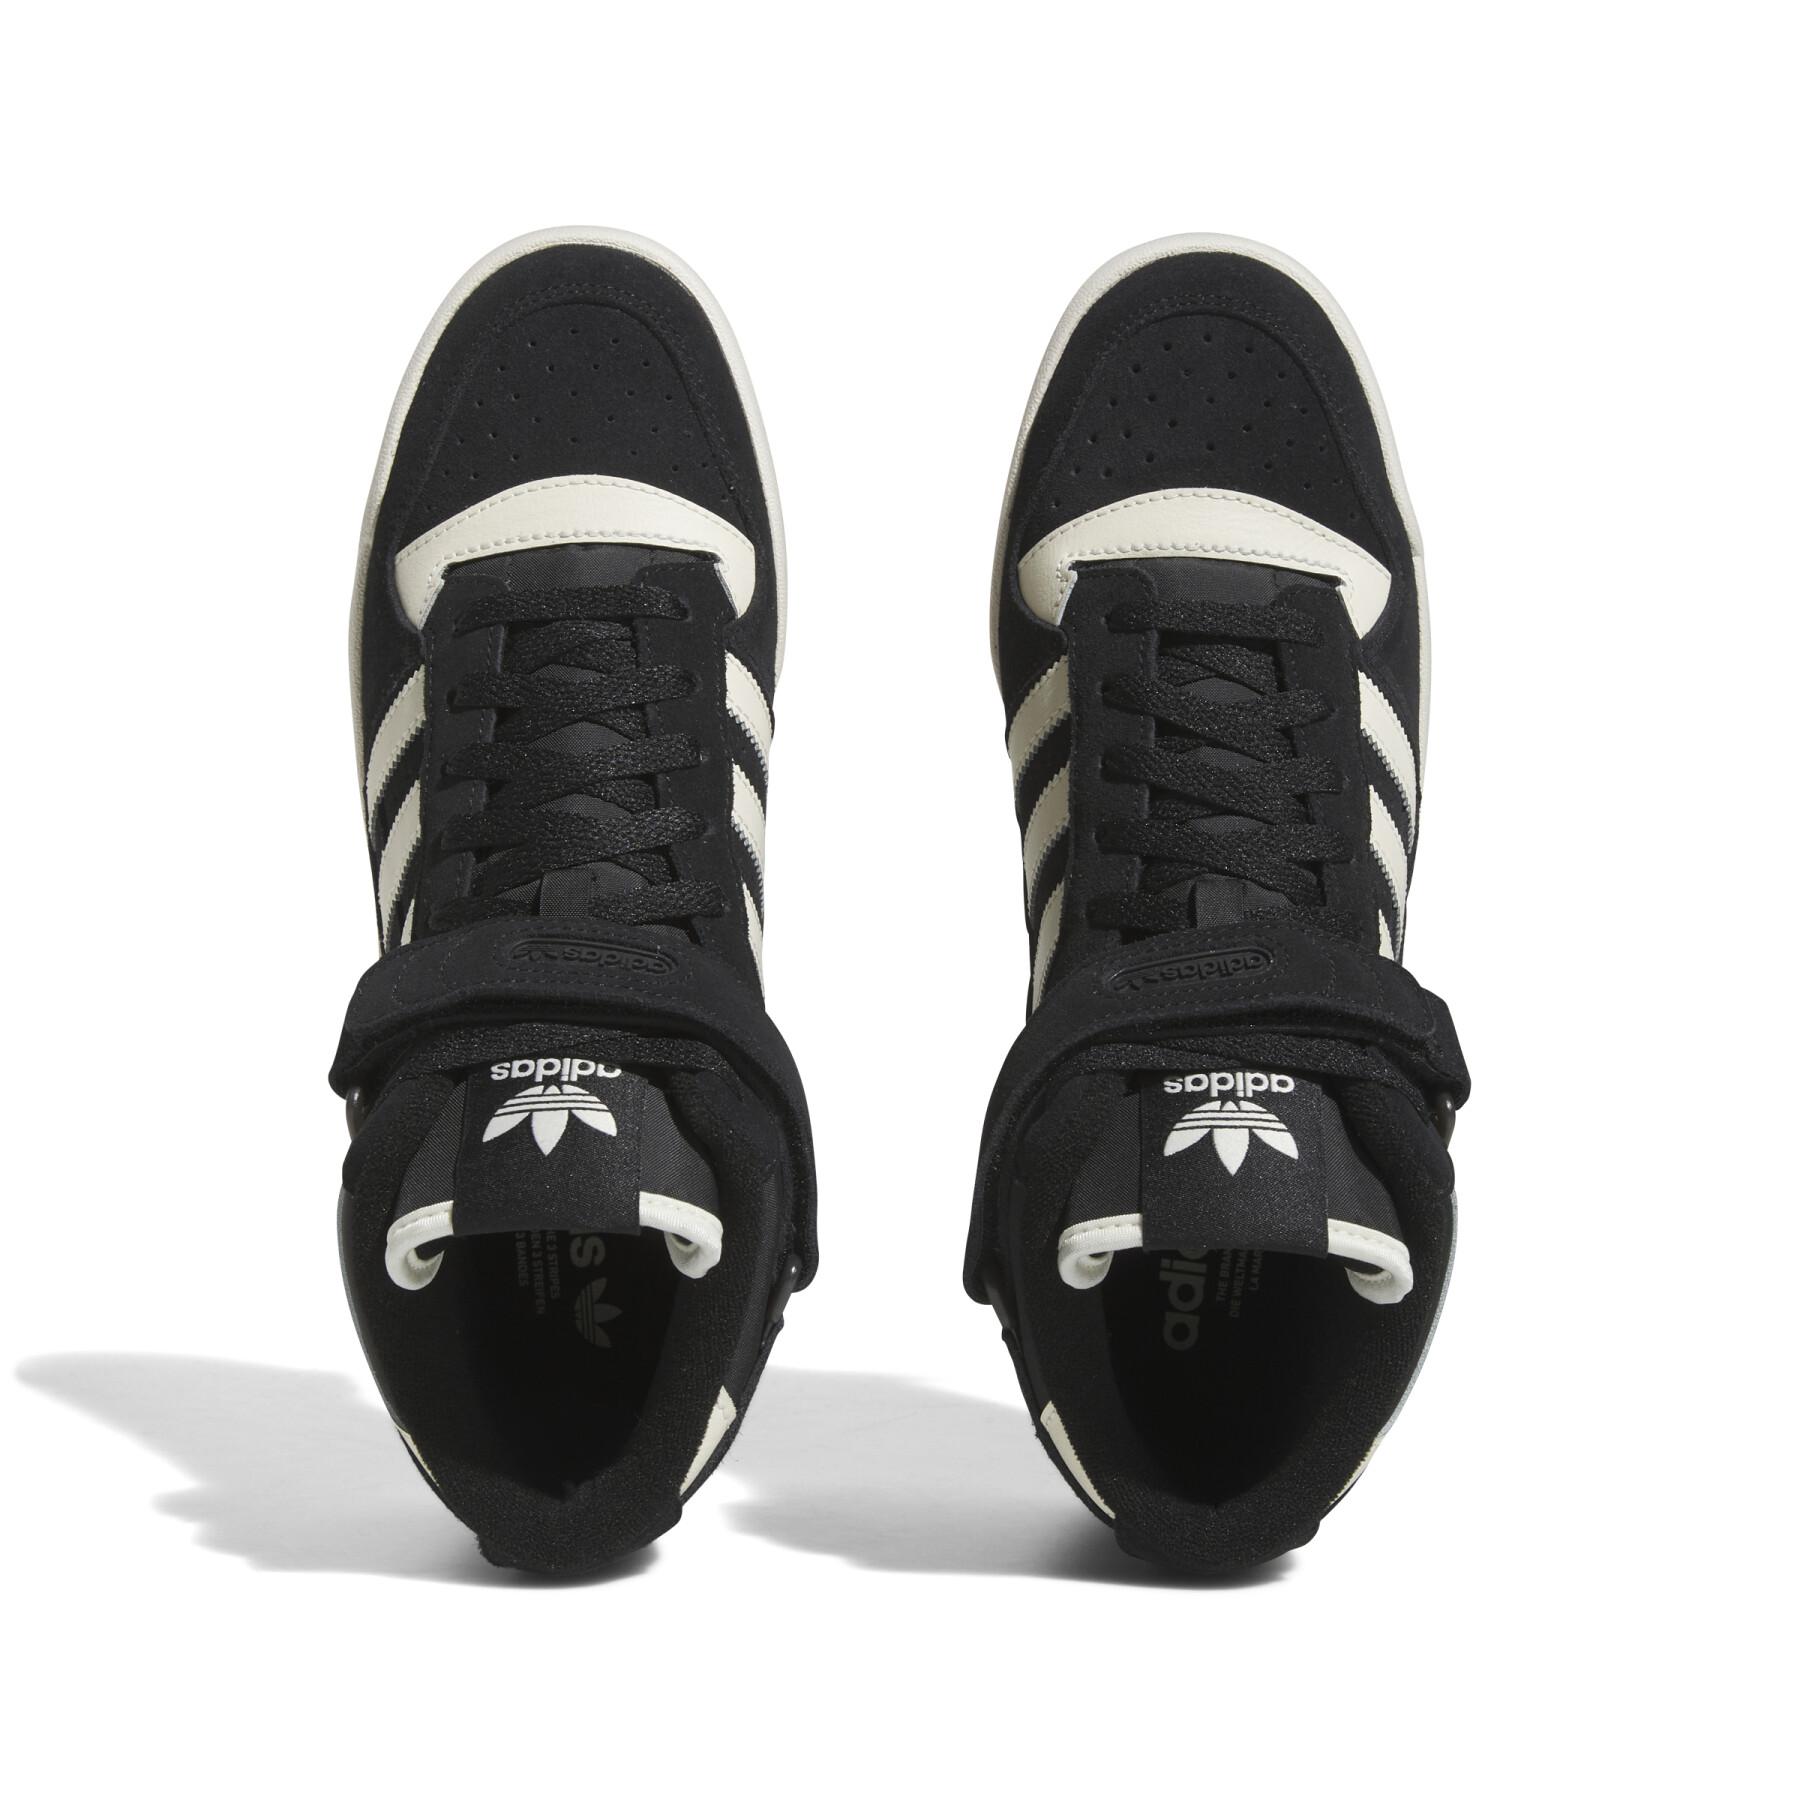 Sneakers adidas Originals Forum